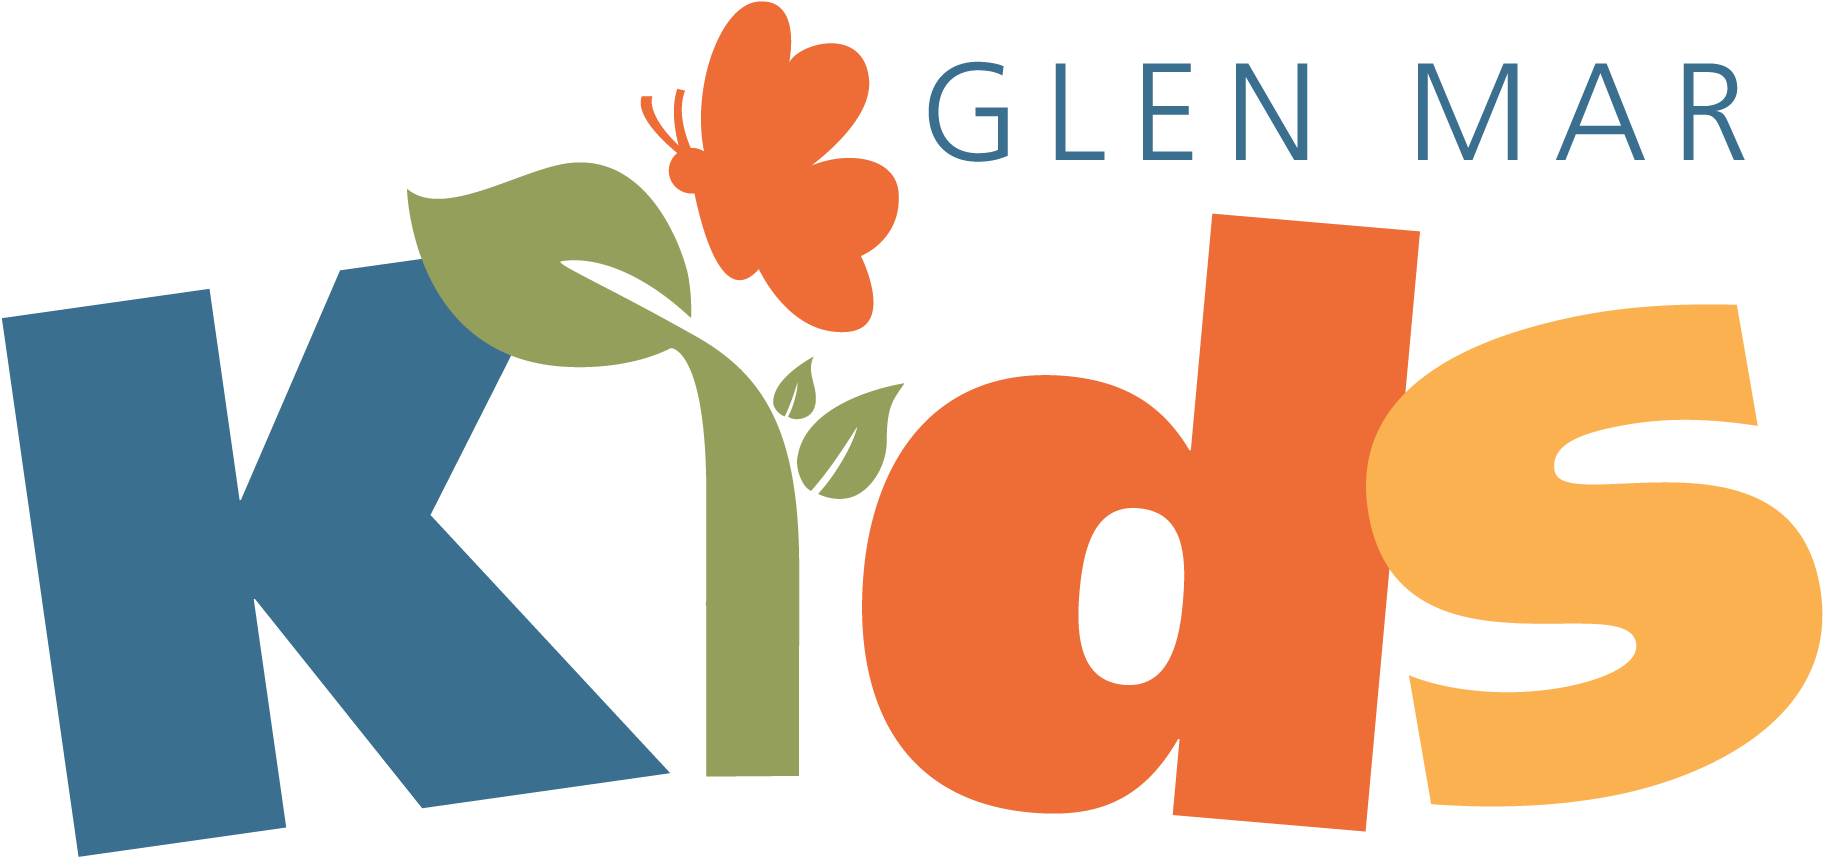 Glen Mar Kids Logo - Sunday School Logo (2009x1243)